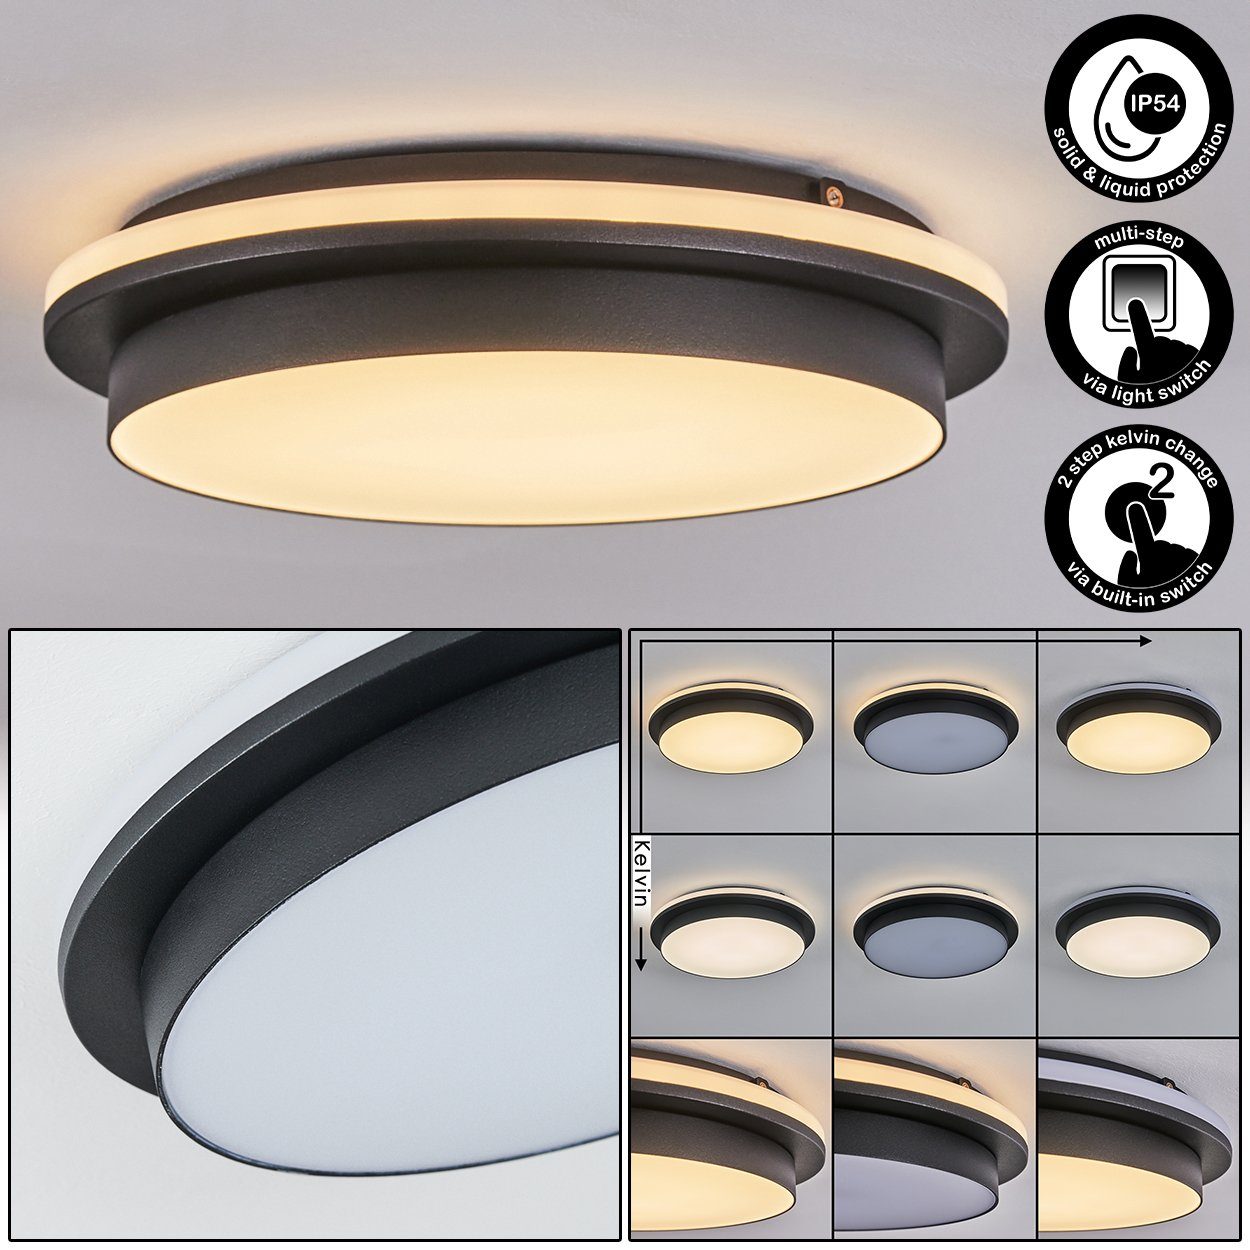 hofstein Außen-Deckenleuchte moderne Deckenlampe Schwarz/Weiß, IP54 aus über Metall/Kunststoff wechselbar, Schalter, schaltbar, änderbar in unterschiedlich Lichtfarbe LED